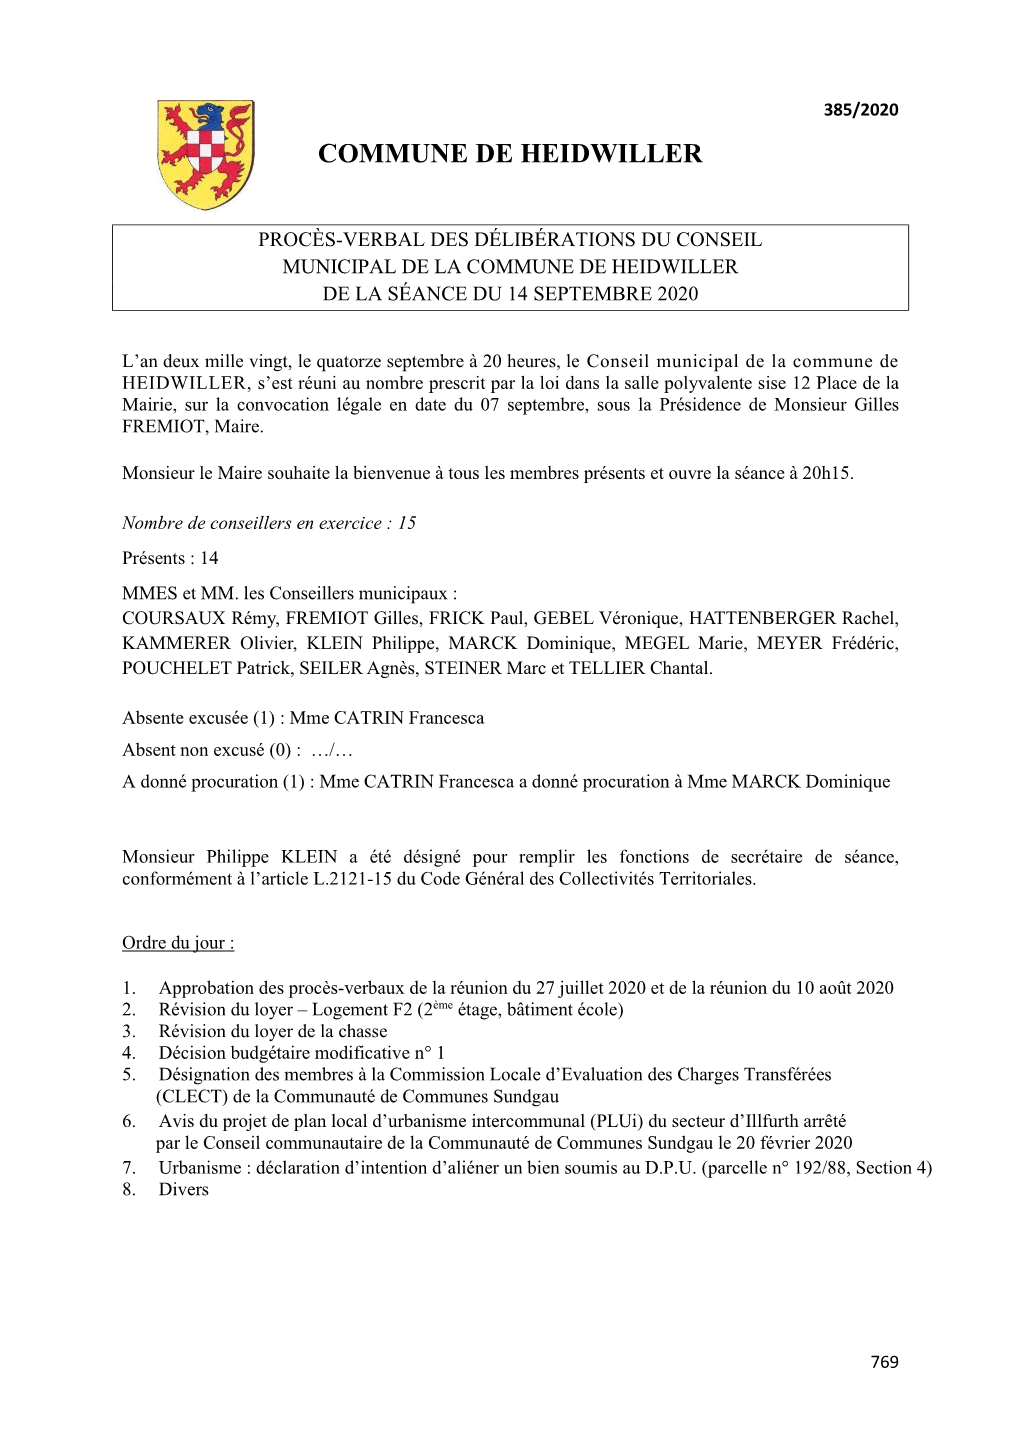 Procès-Verbal Des Délibérations Du Conseil Municipal De La Commune De Heidwiller De La Séance Du 14 Septembre 2020